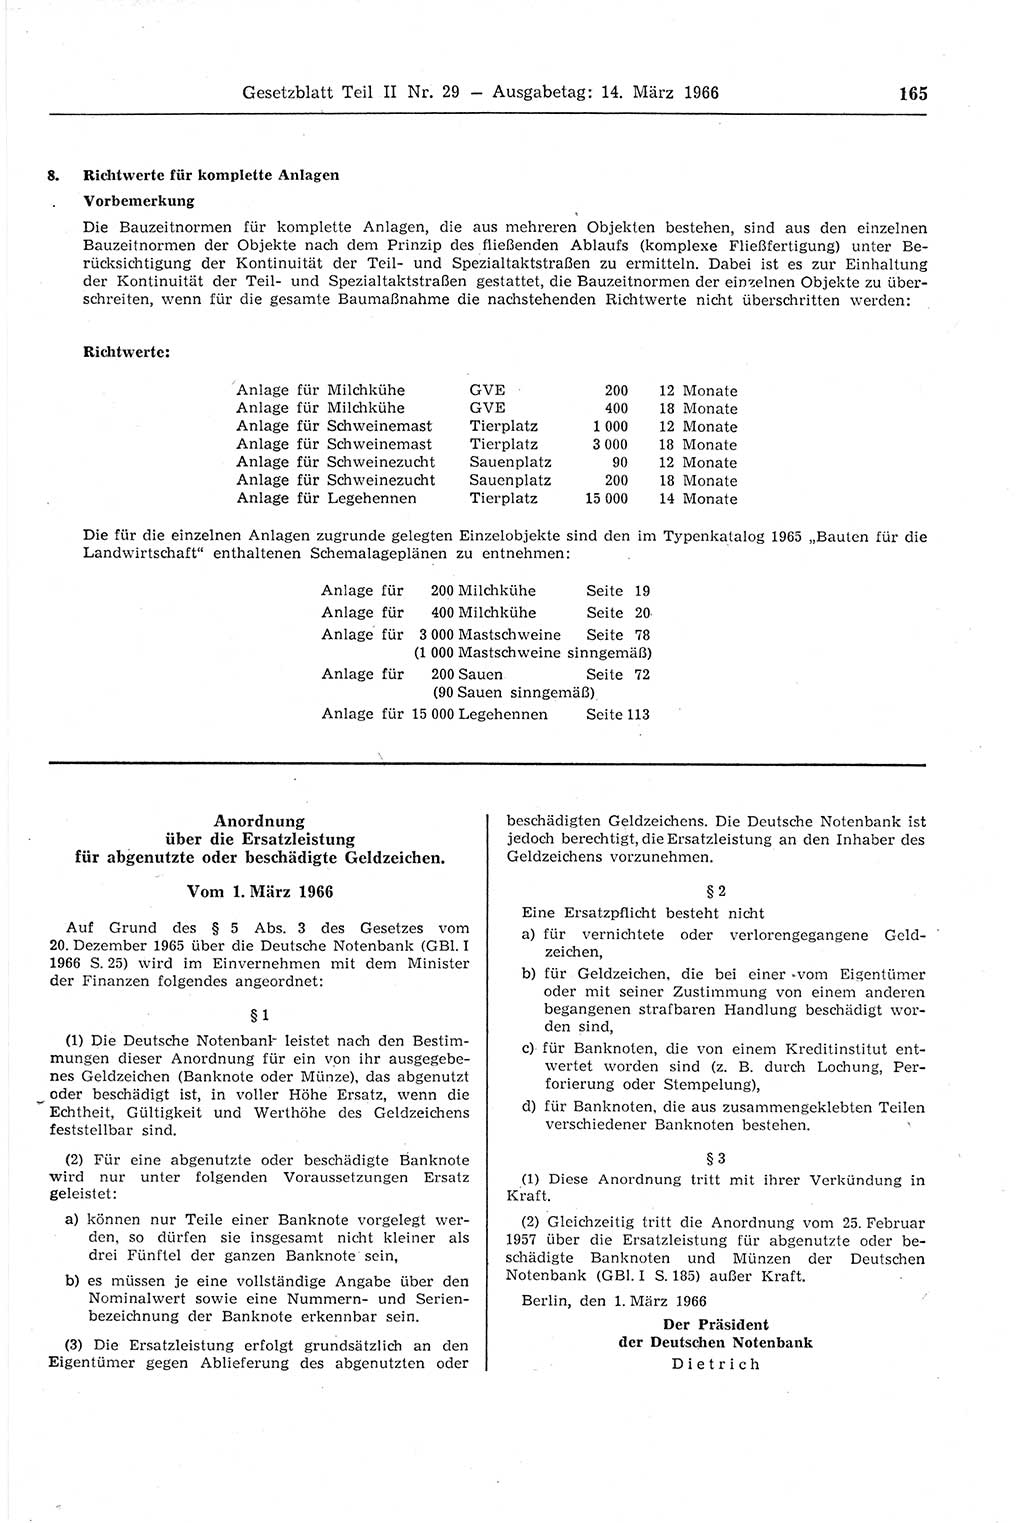 Gesetzblatt (GBl.) der Deutschen Demokratischen Republik (DDR) Teil ⅠⅠ 1966, Seite 165 (GBl. DDR ⅠⅠ 1966, S. 165)